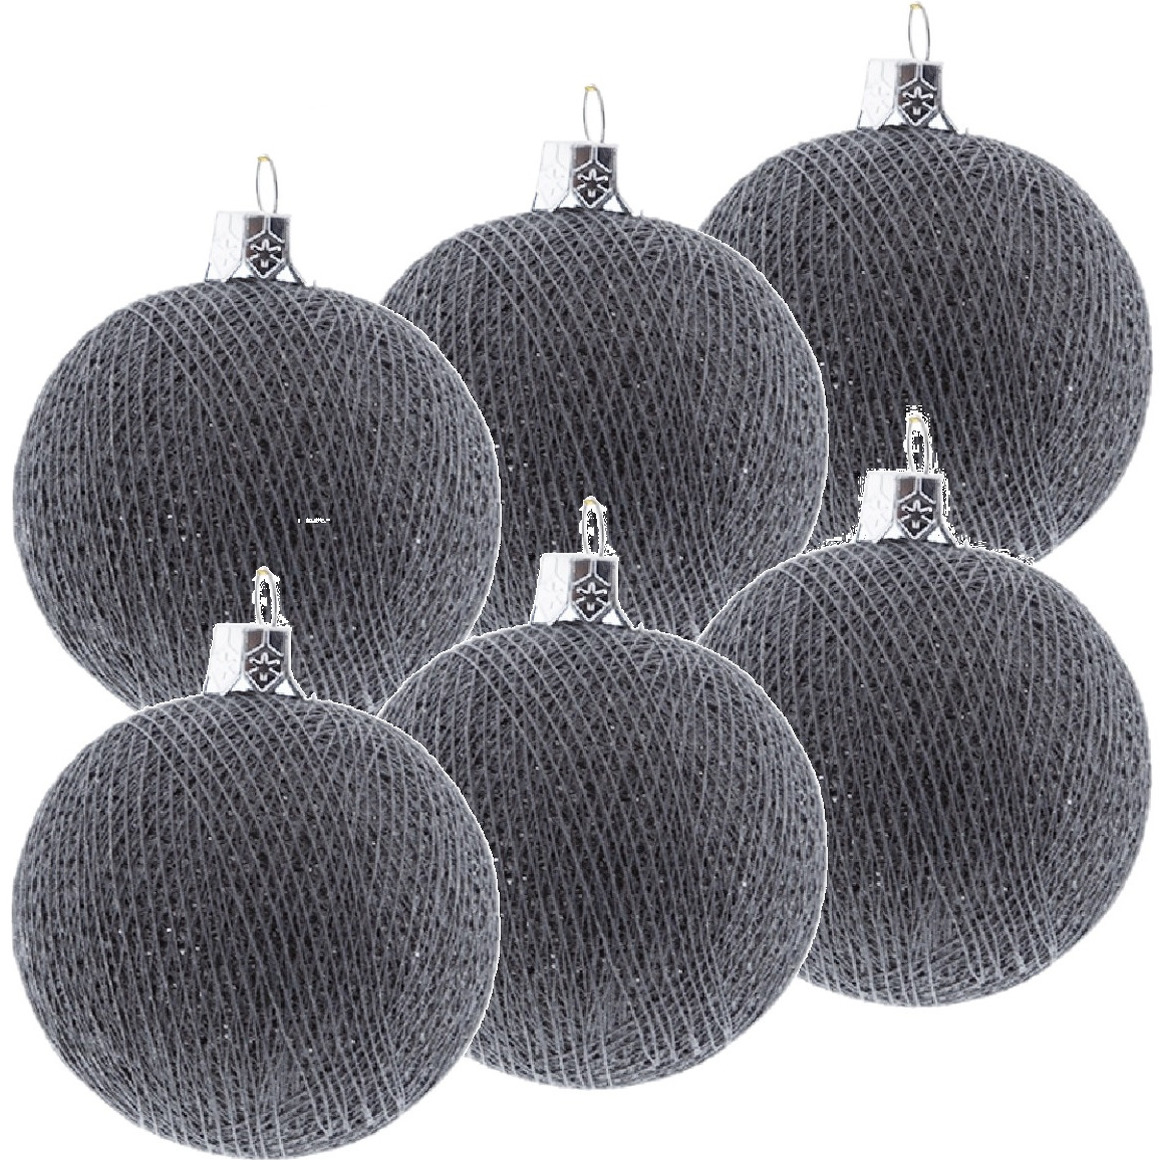 9x Grijze Cotton Balls kerstballen decoratie 6,5 cm